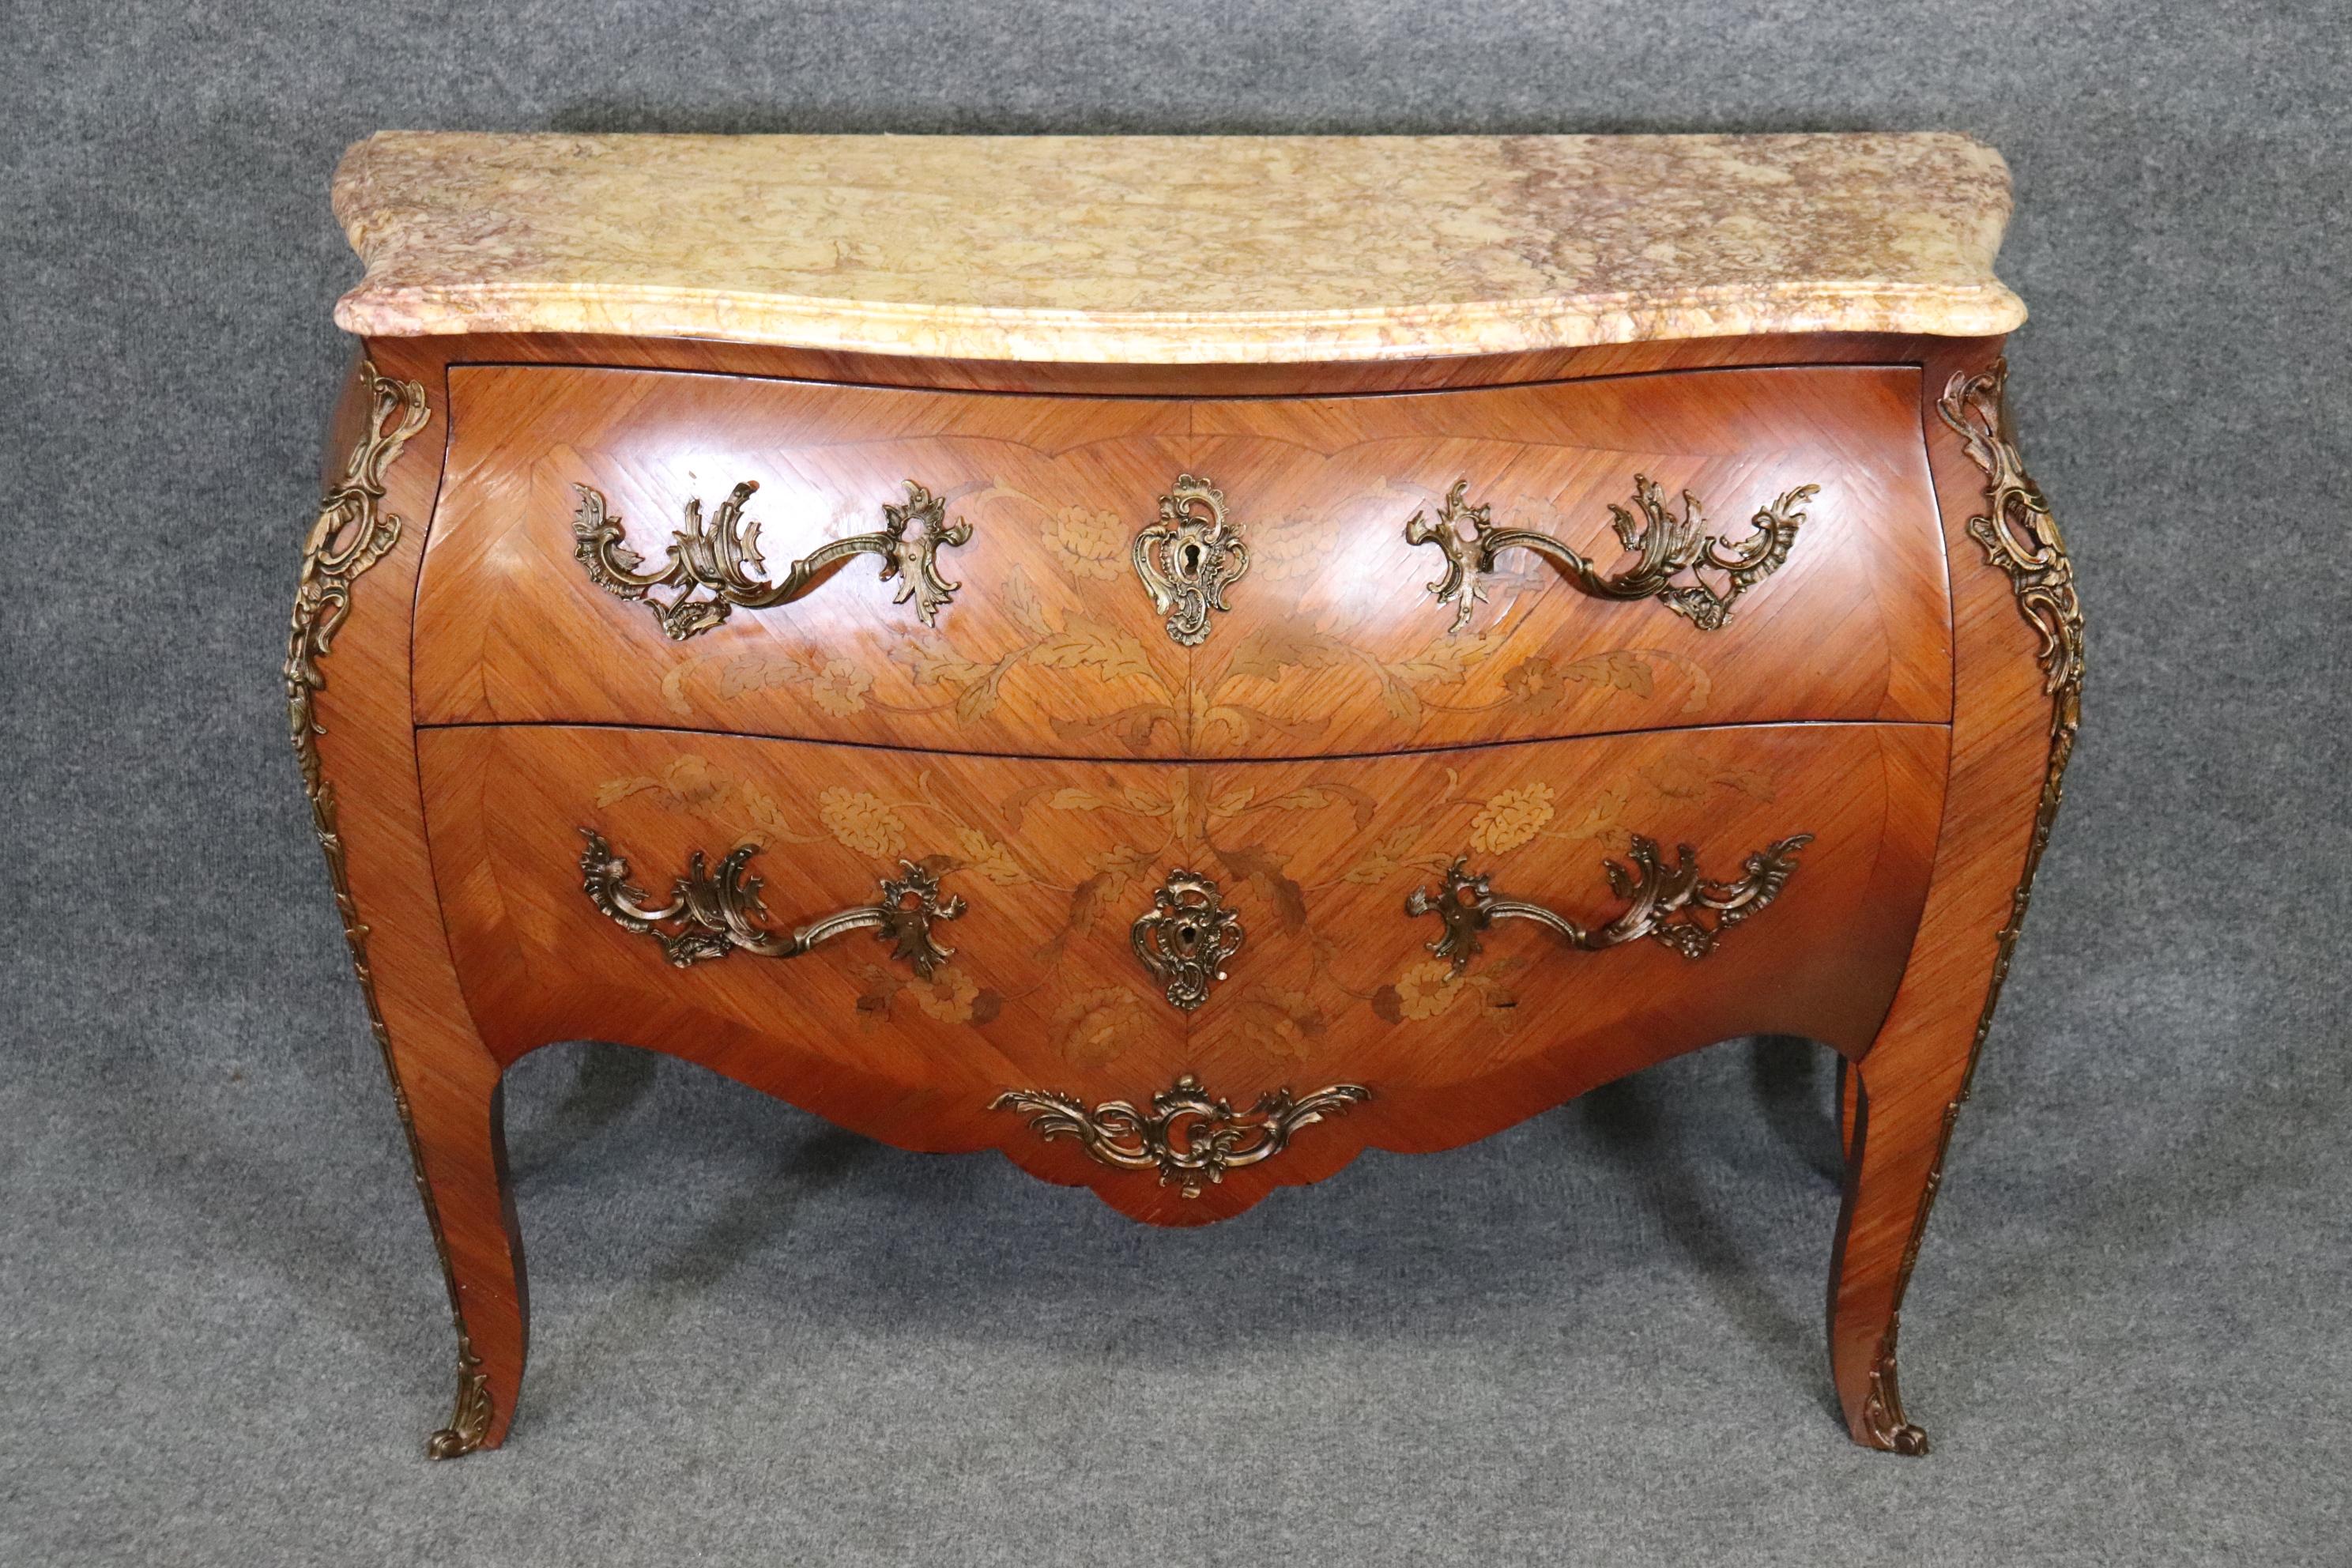 Dies ist ein atemberaubendes Stück Französisch Louis XV-Stil Möbel mit den besten Marmorplatte und herrlichen bully Bronze omorlu und Intarsien. Die Marmorplatte ist ein wunderschönes lavendelfarbenes bis gelbes Marmorstück. Das Gehäuse ist mit